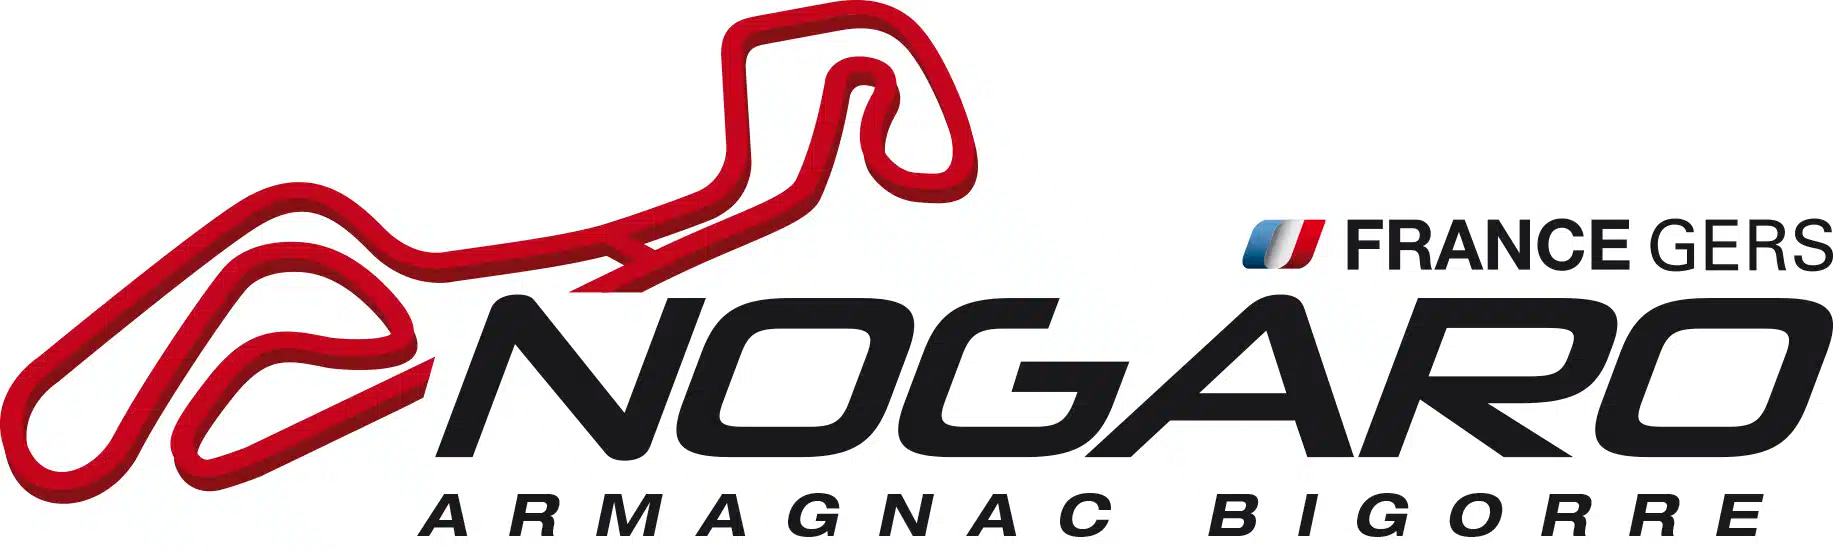 Circuit de Nogaro